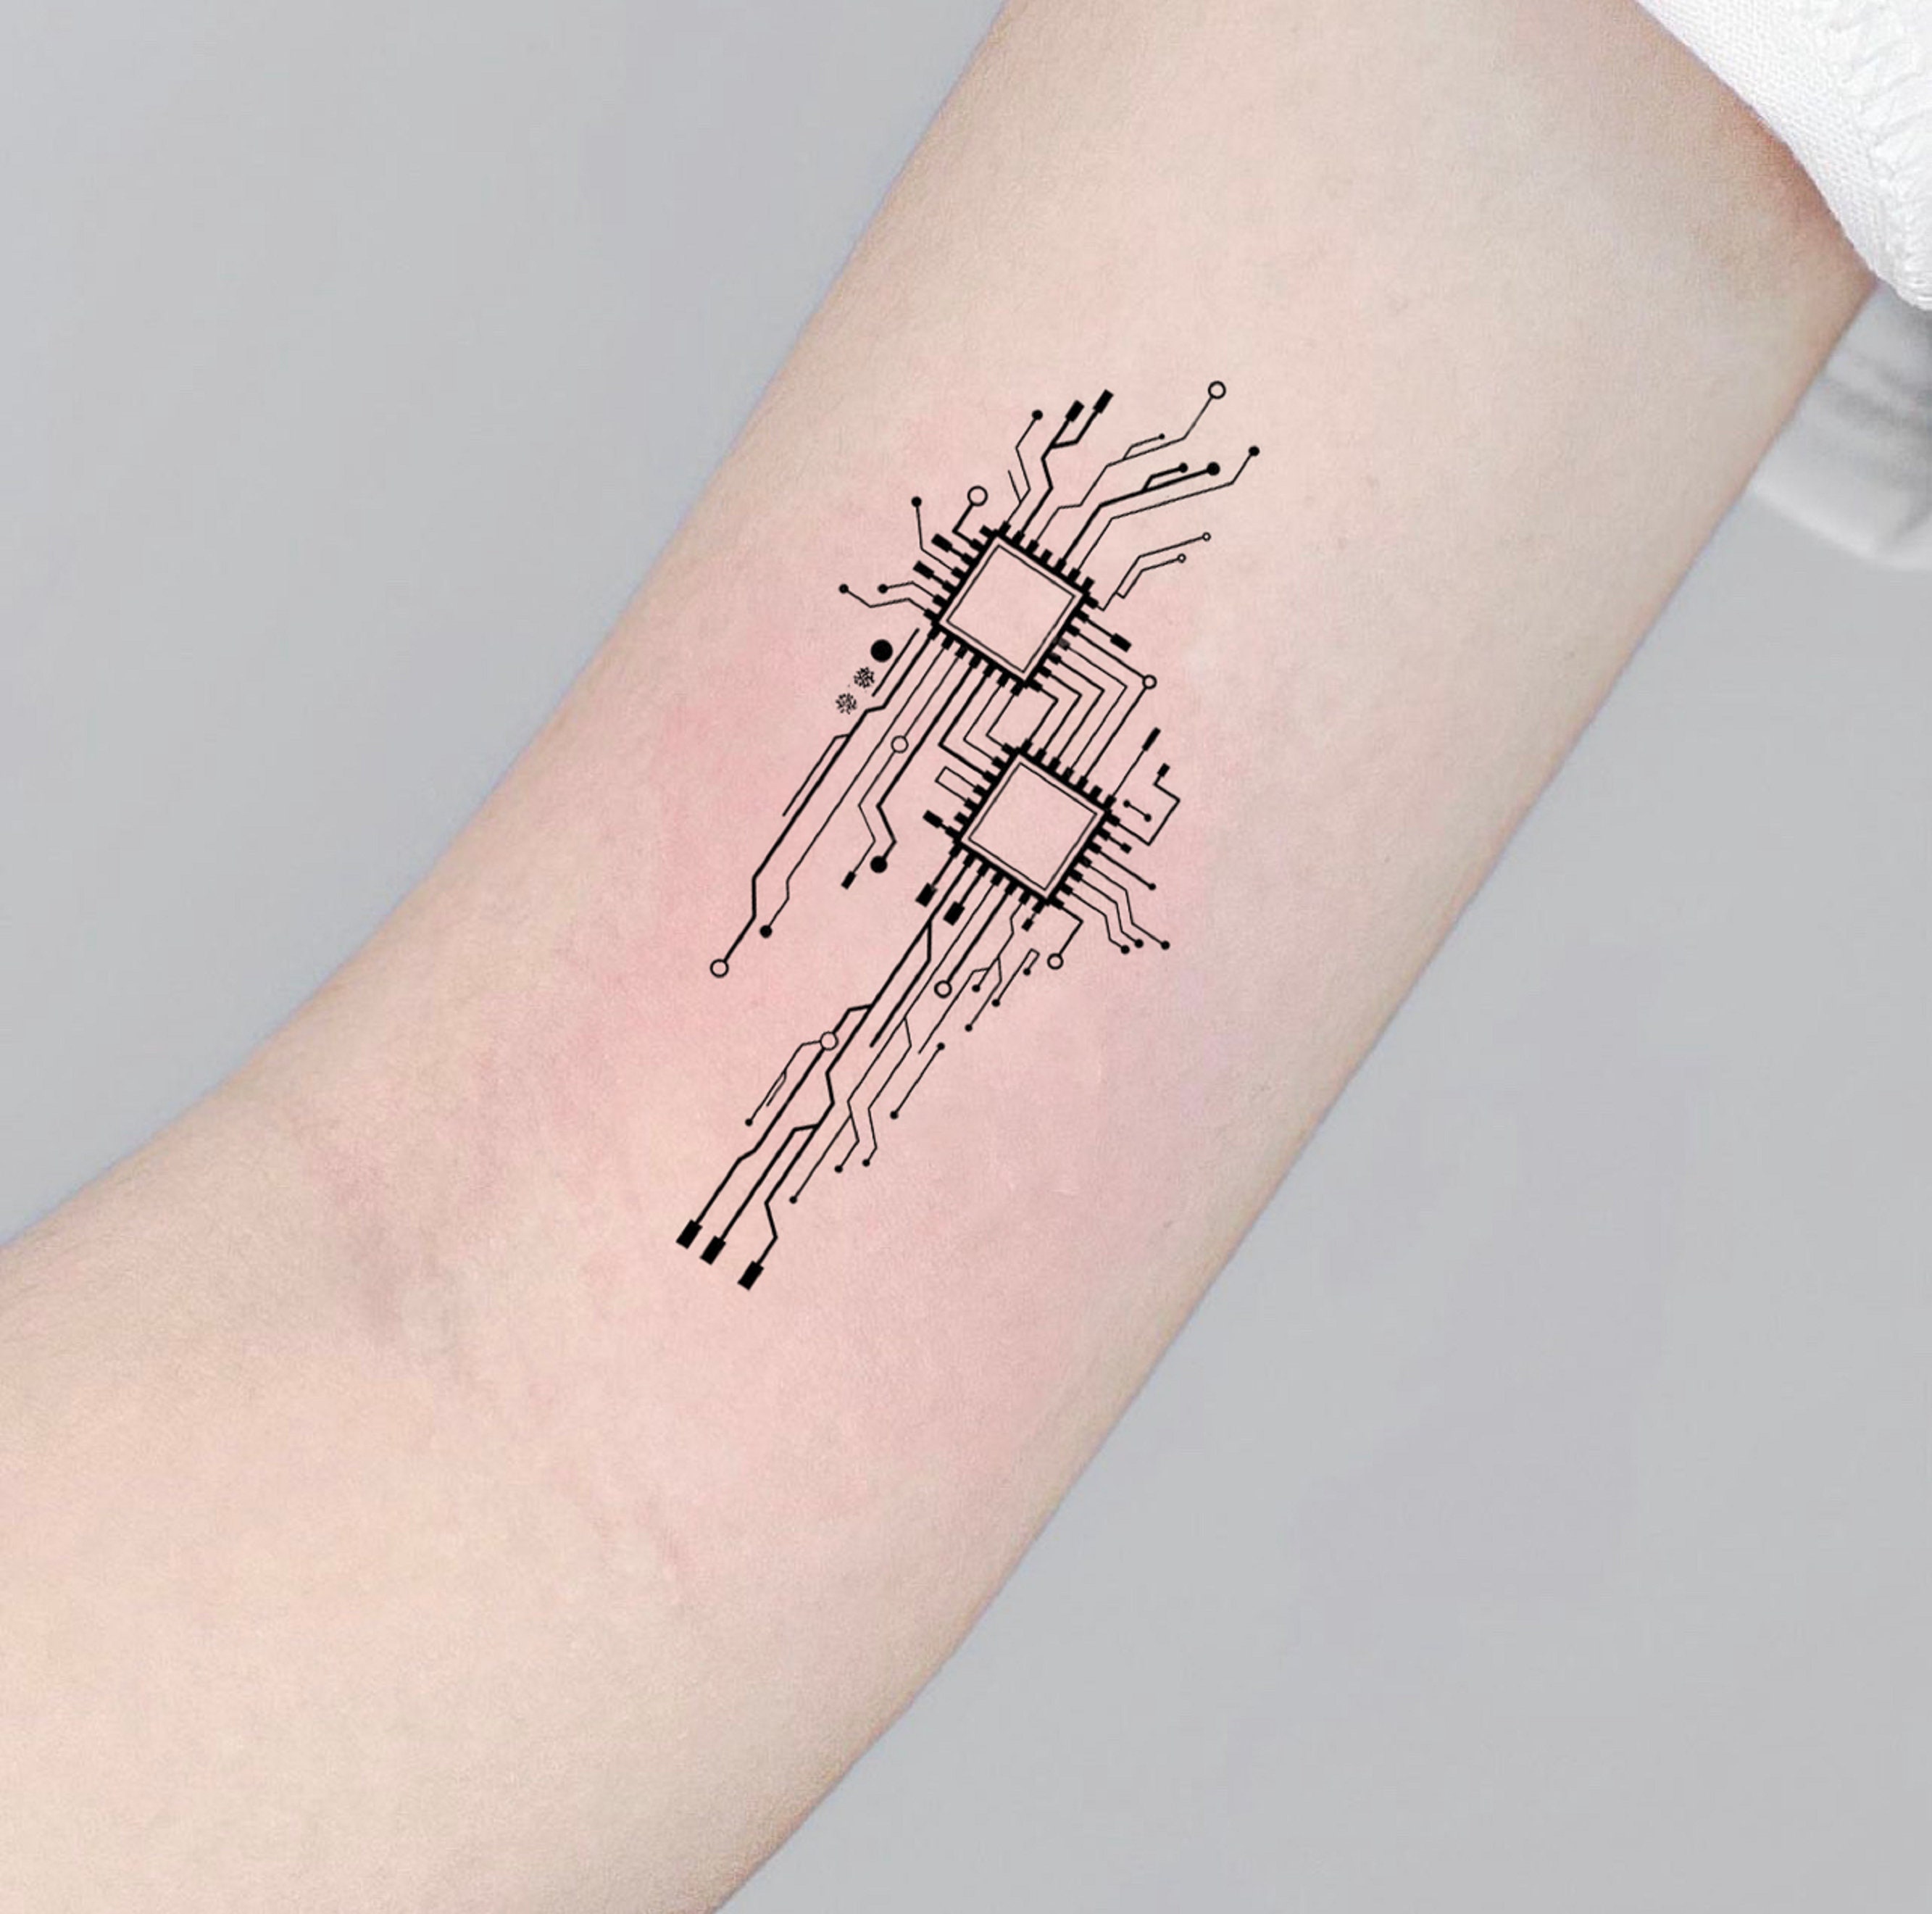 2,086 张Circuit tattoo 免版税照片和库存图片| Shutterstock